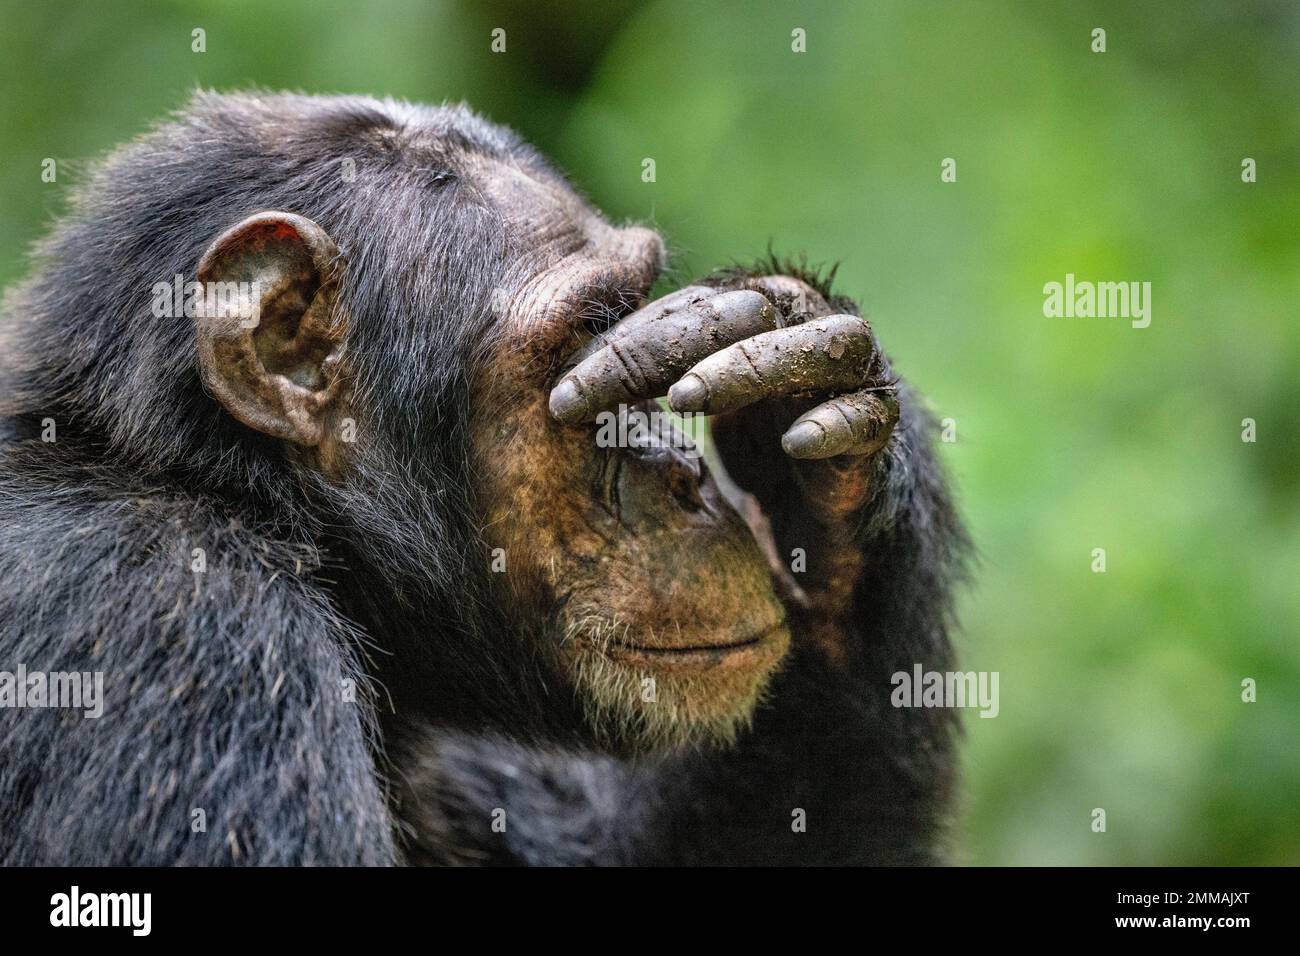 Un chimpancé parece cubrir sus ojos con su mano, sentado bajo entre la selva tropical. Imagen capturada en la selva tropical de Kibale, al oeste de Uganda. Foto de stock